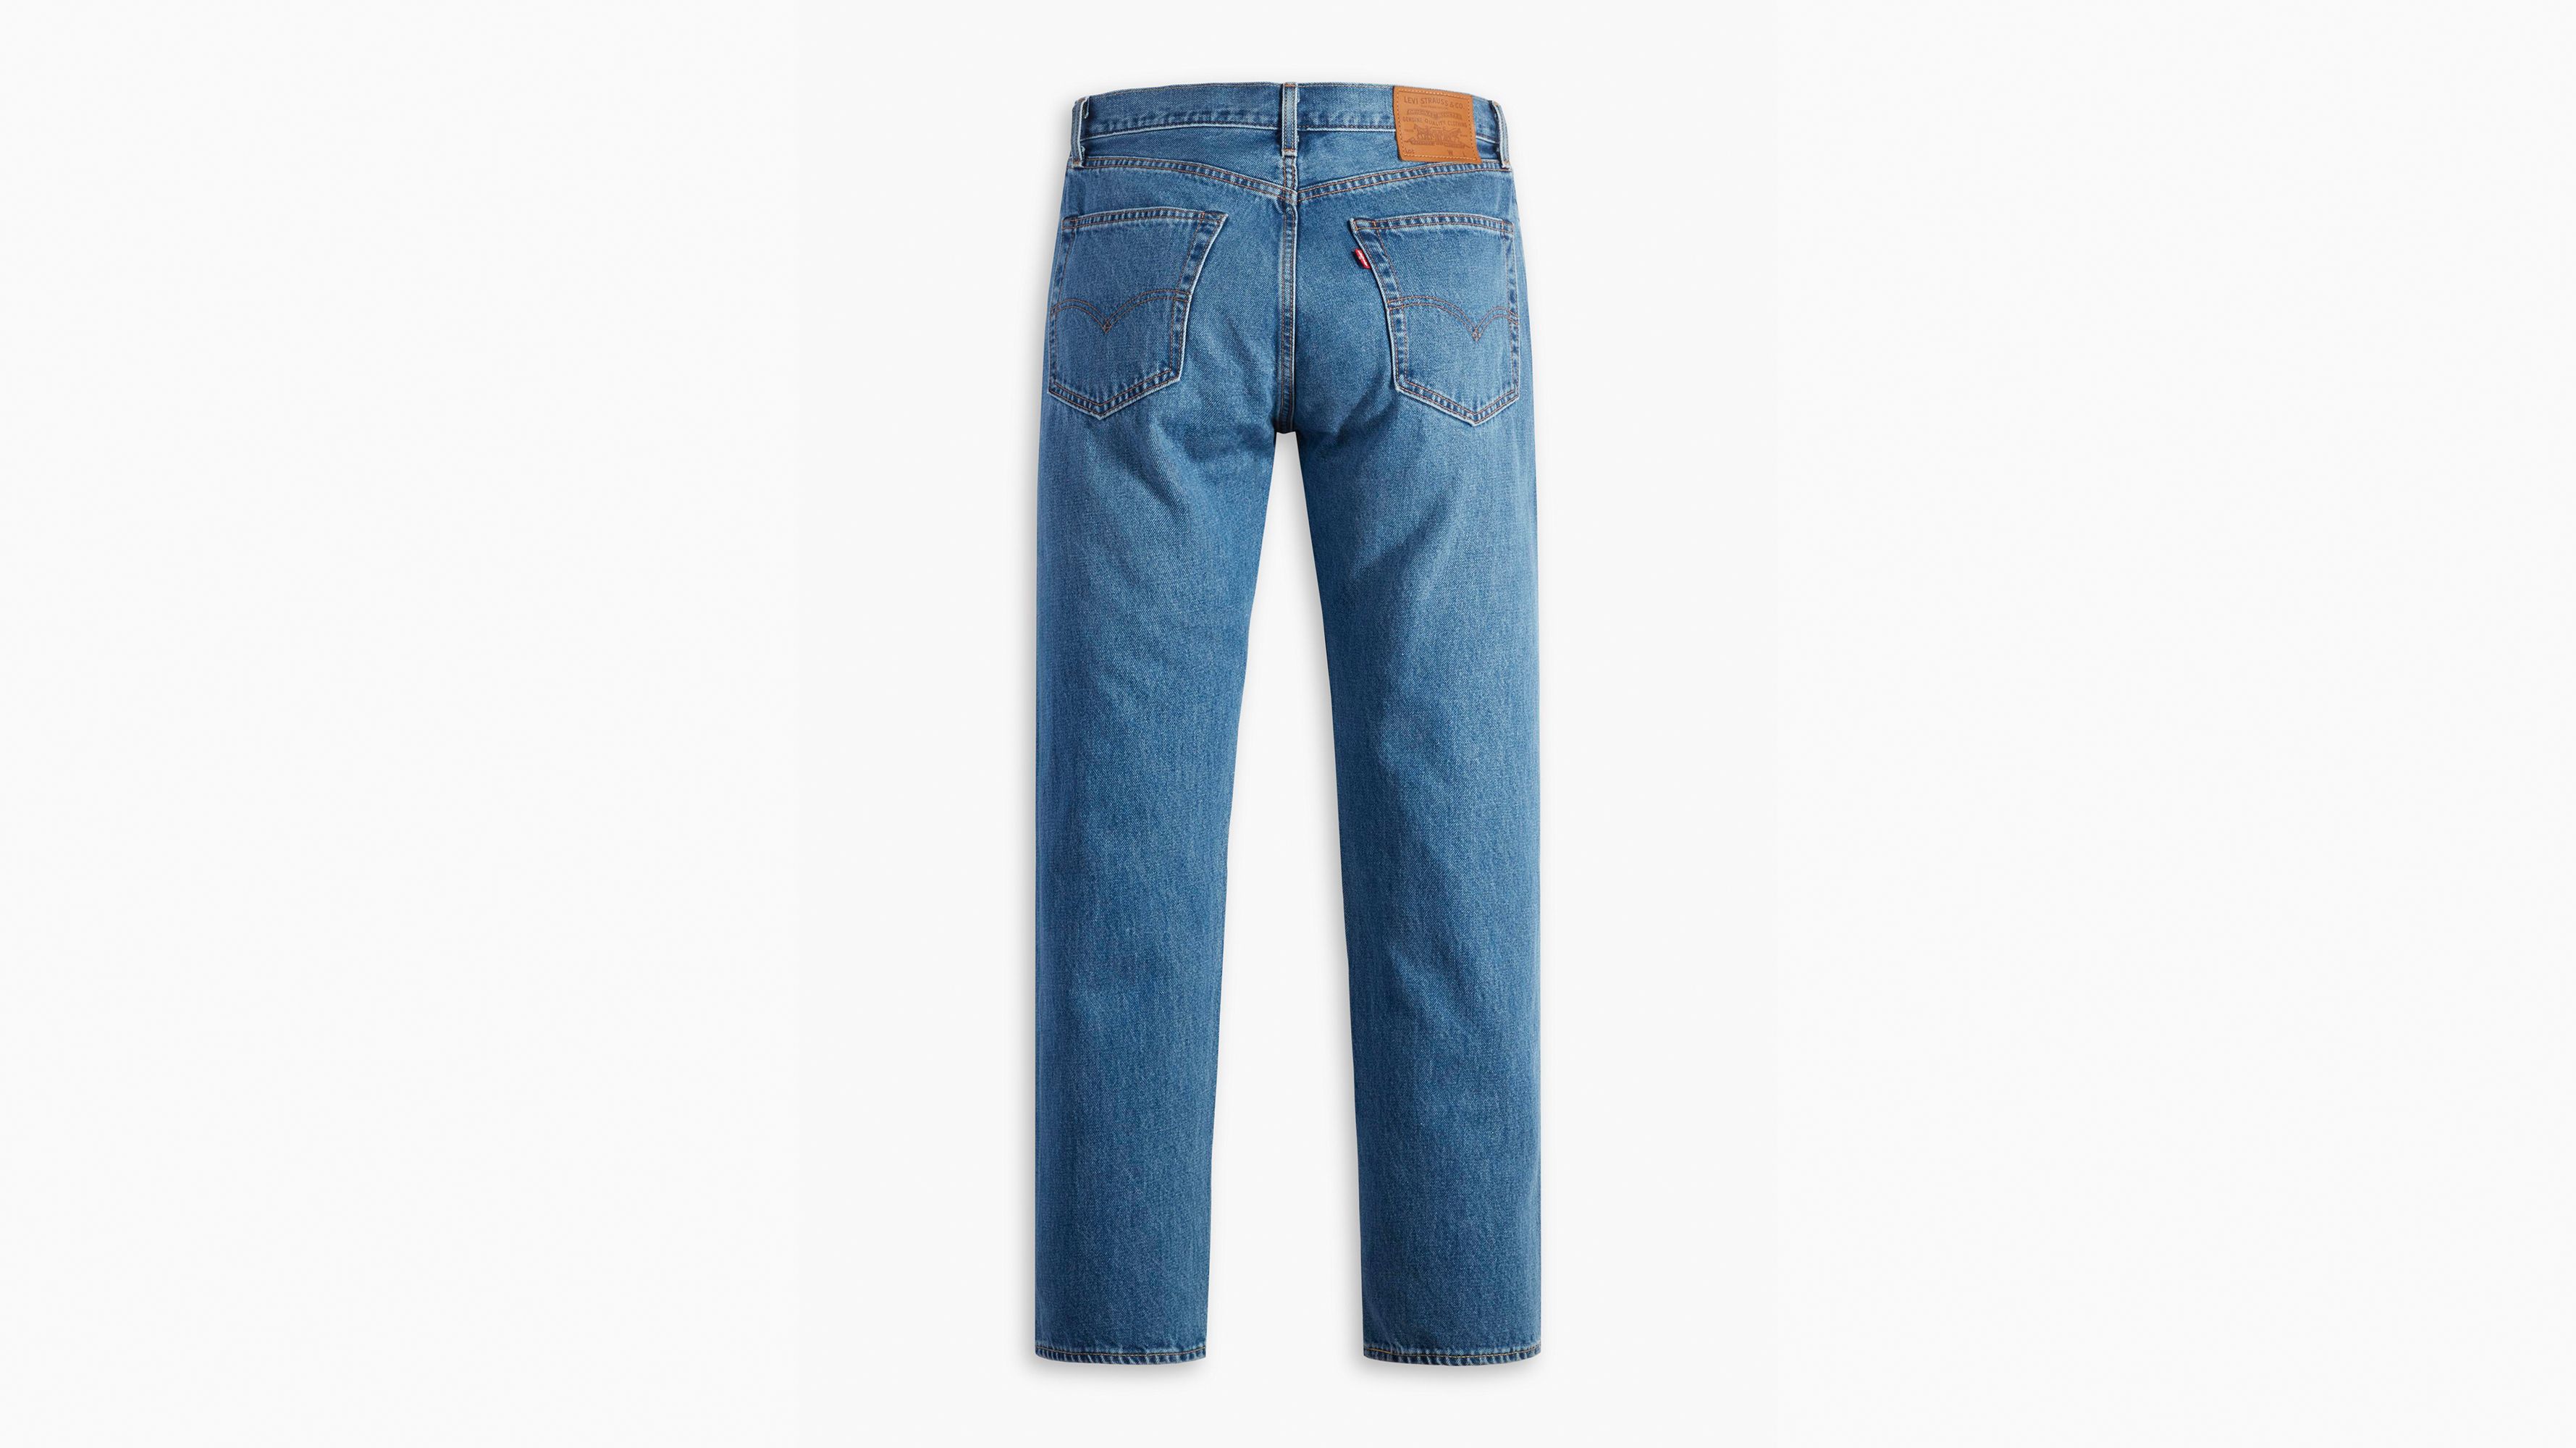 551™ Z Authentic Straight Fit Men's Jeans - Medium Wash | Levi's 